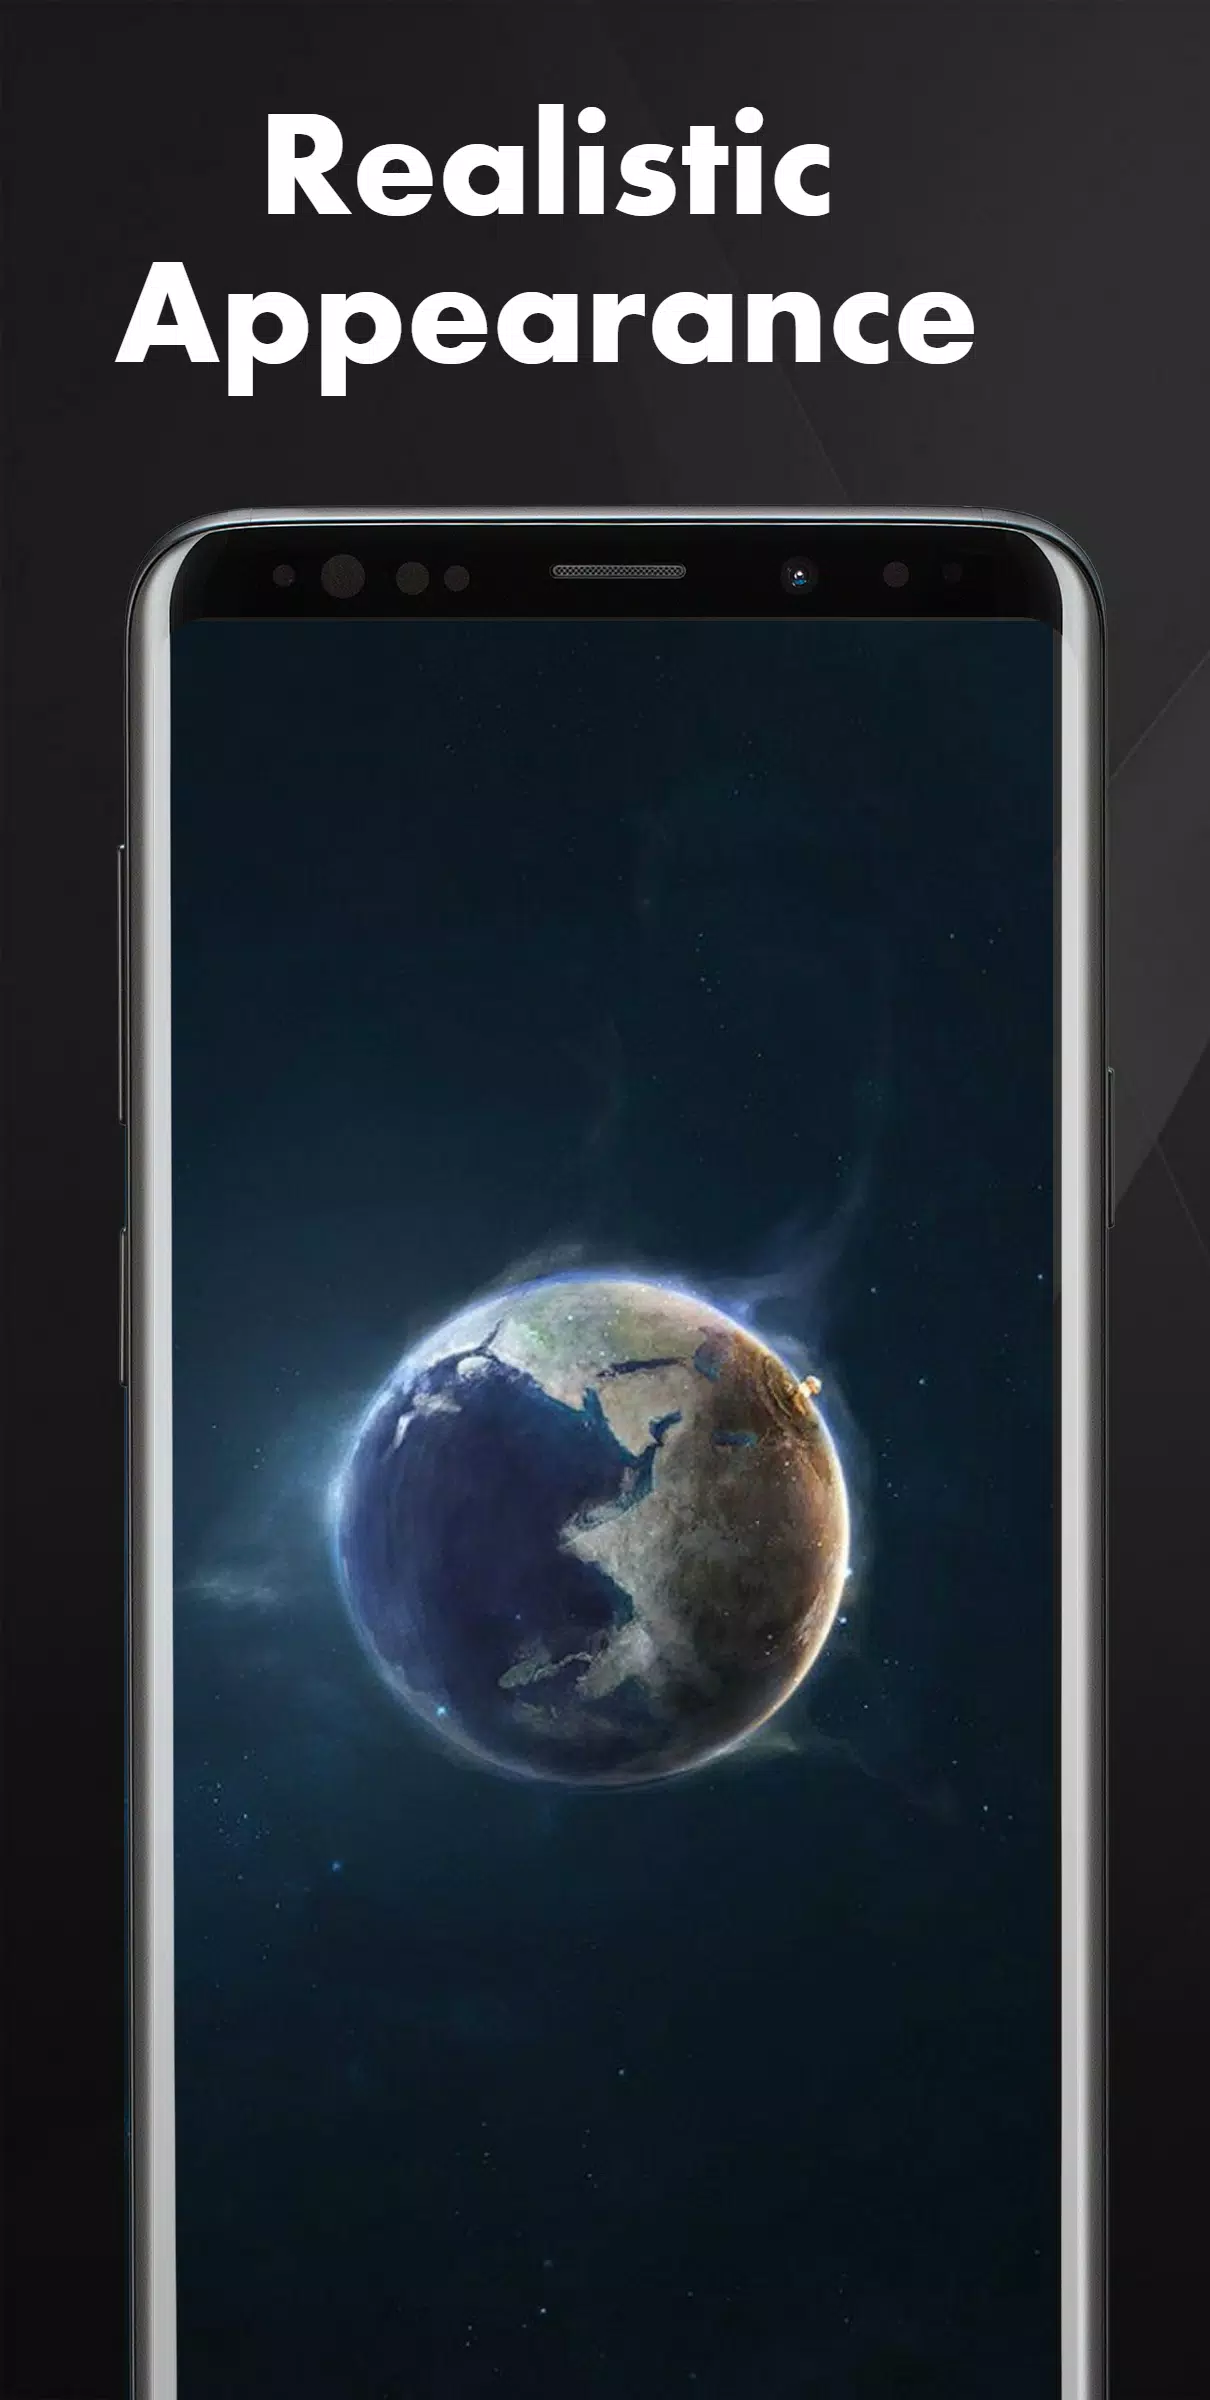 Hãy tải xuống APK miễn phí của bản sao hình nền hành tinh phong cách sao trên thiên hà! Được tạo ra bởi những hình ảnh hấp dẫn và bắt mắt, bản sao này chắc chắn sẽ đem đến cho bạn một trải nghiệm đặc biệt trong việc trang trí màn hình điện thoại của mình.